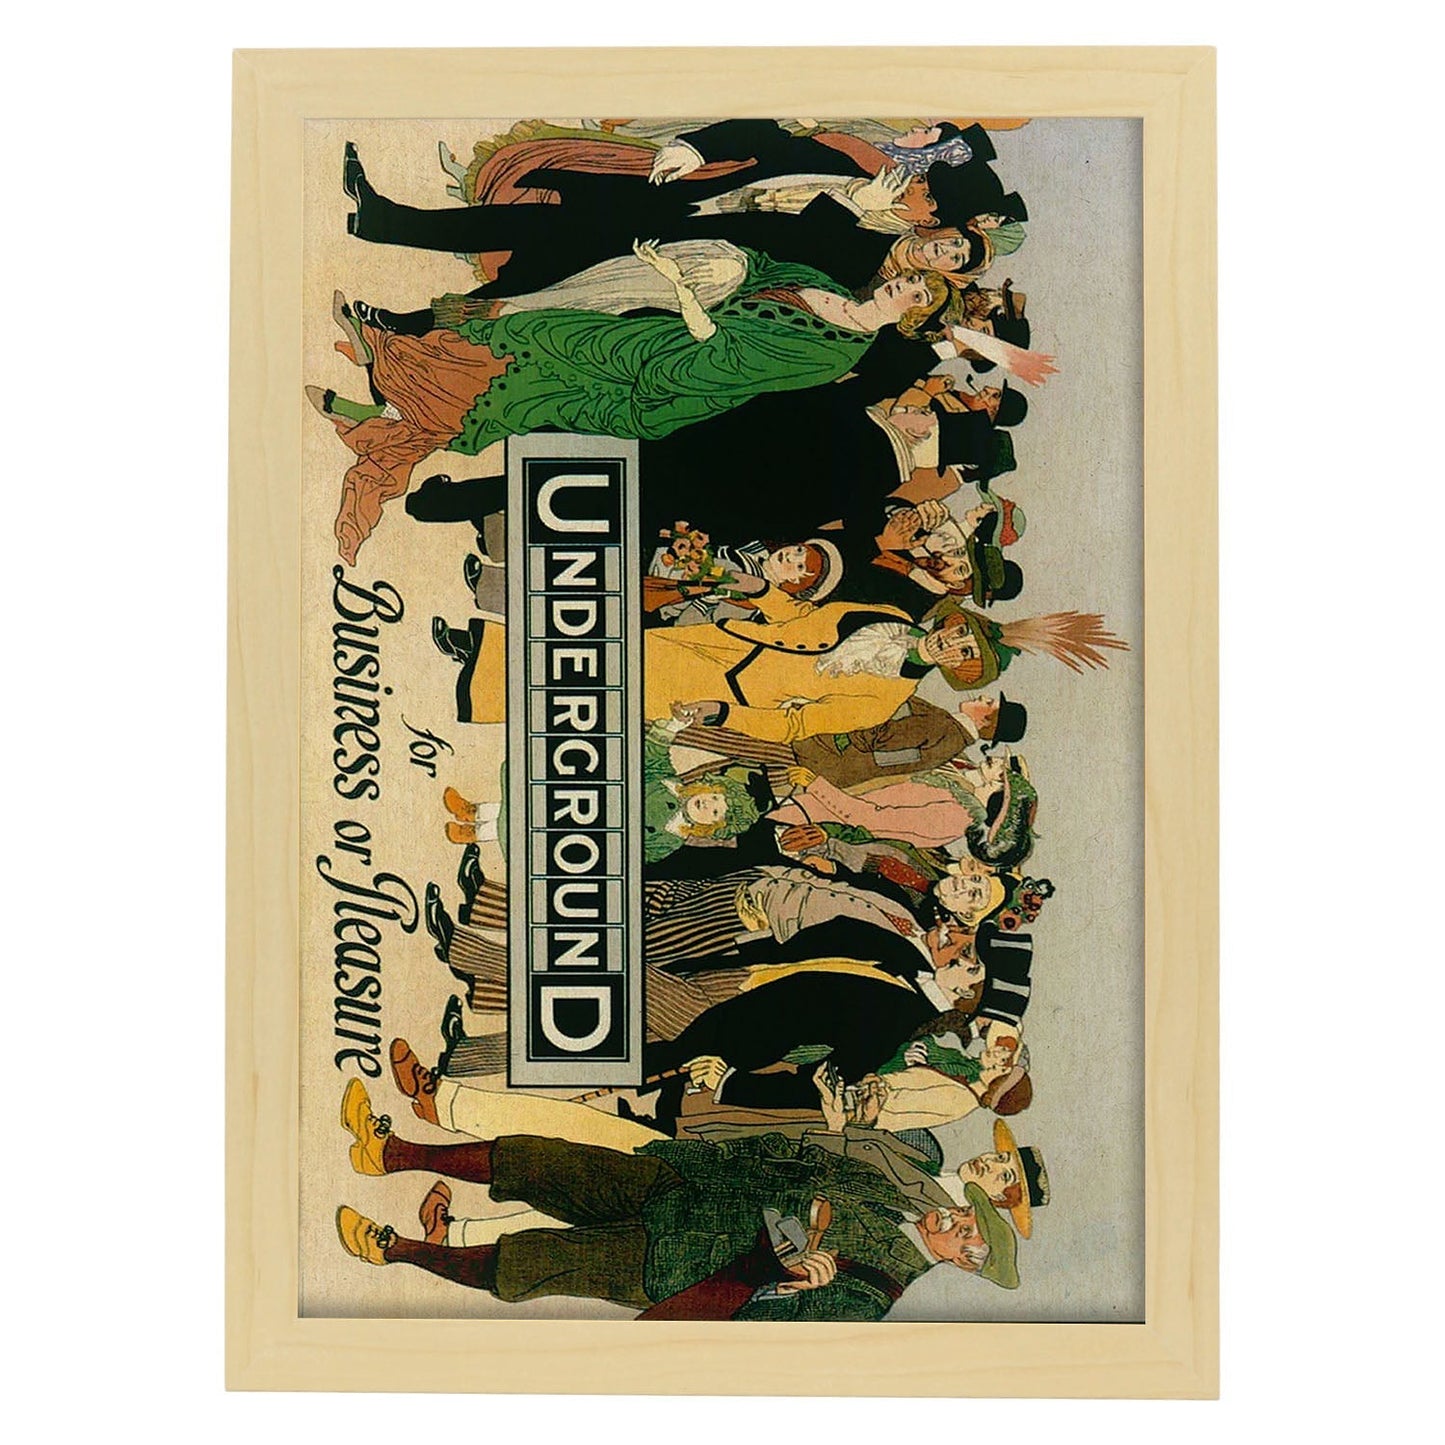 Poster vintage. Cartel vintage de Europa. Metro de Londres, 1913.-Artwork-Nacnic-A4-Marco Madera clara-Nacnic Estudio SL